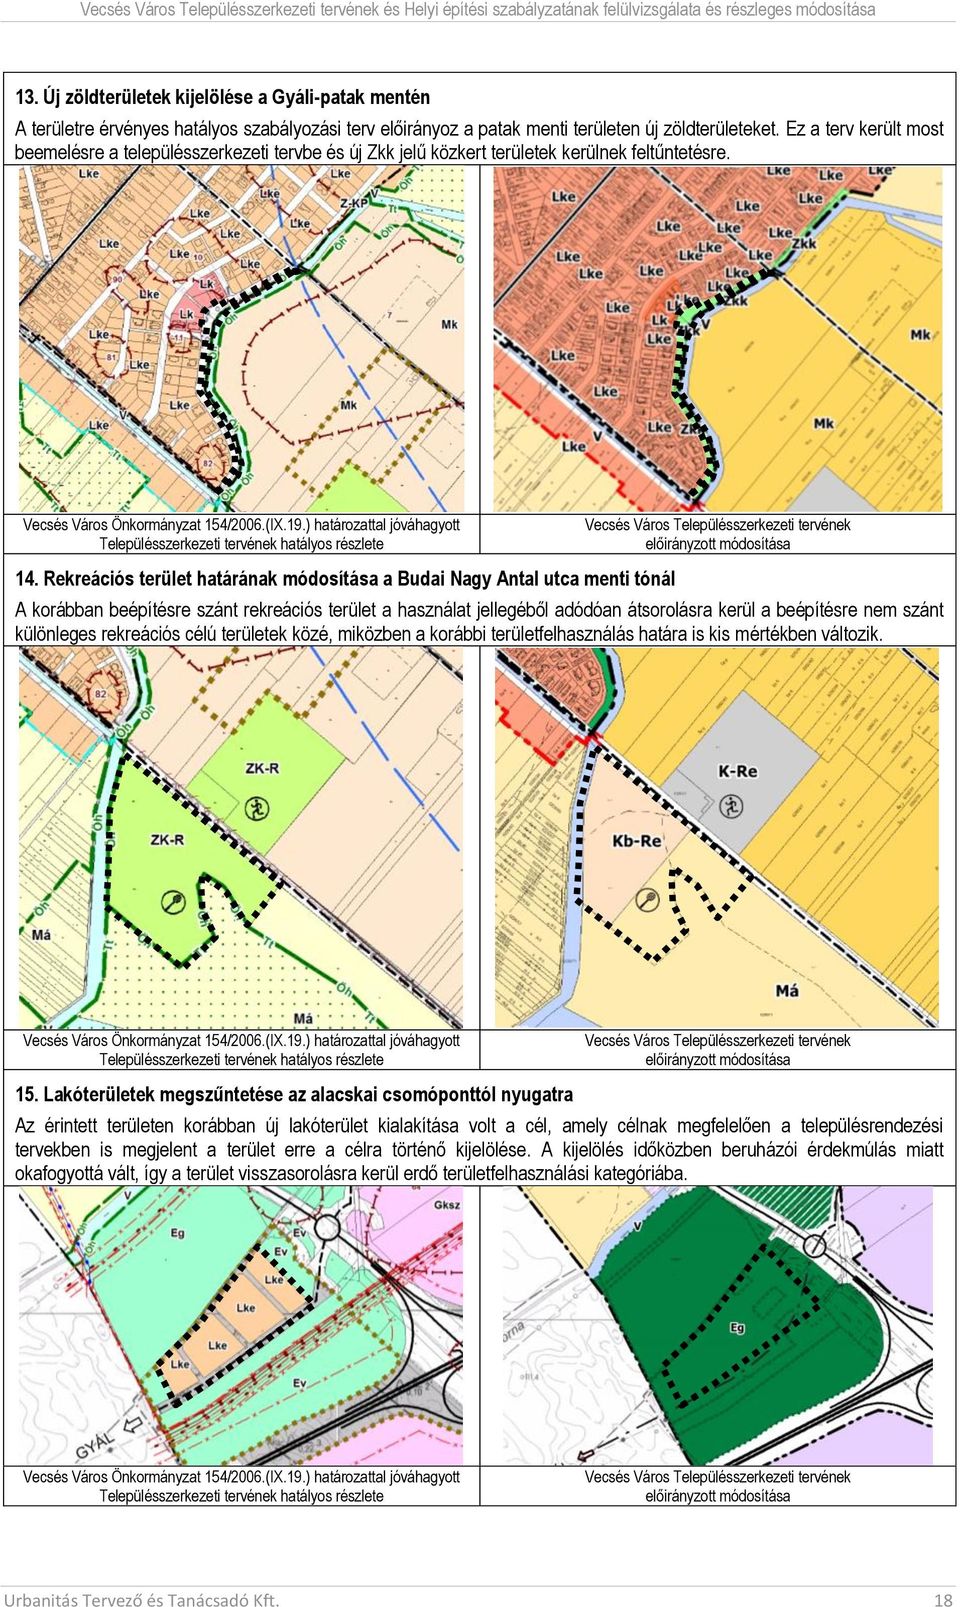 Ez a terv került most beemelésre a településszerkezeti tervbe és új Zkk jelű közkert területek kerülnek feltűntetésre. Vesés Város Önkormányzat 154/26.(IX.19.) határozattal jóváhagyott 14.